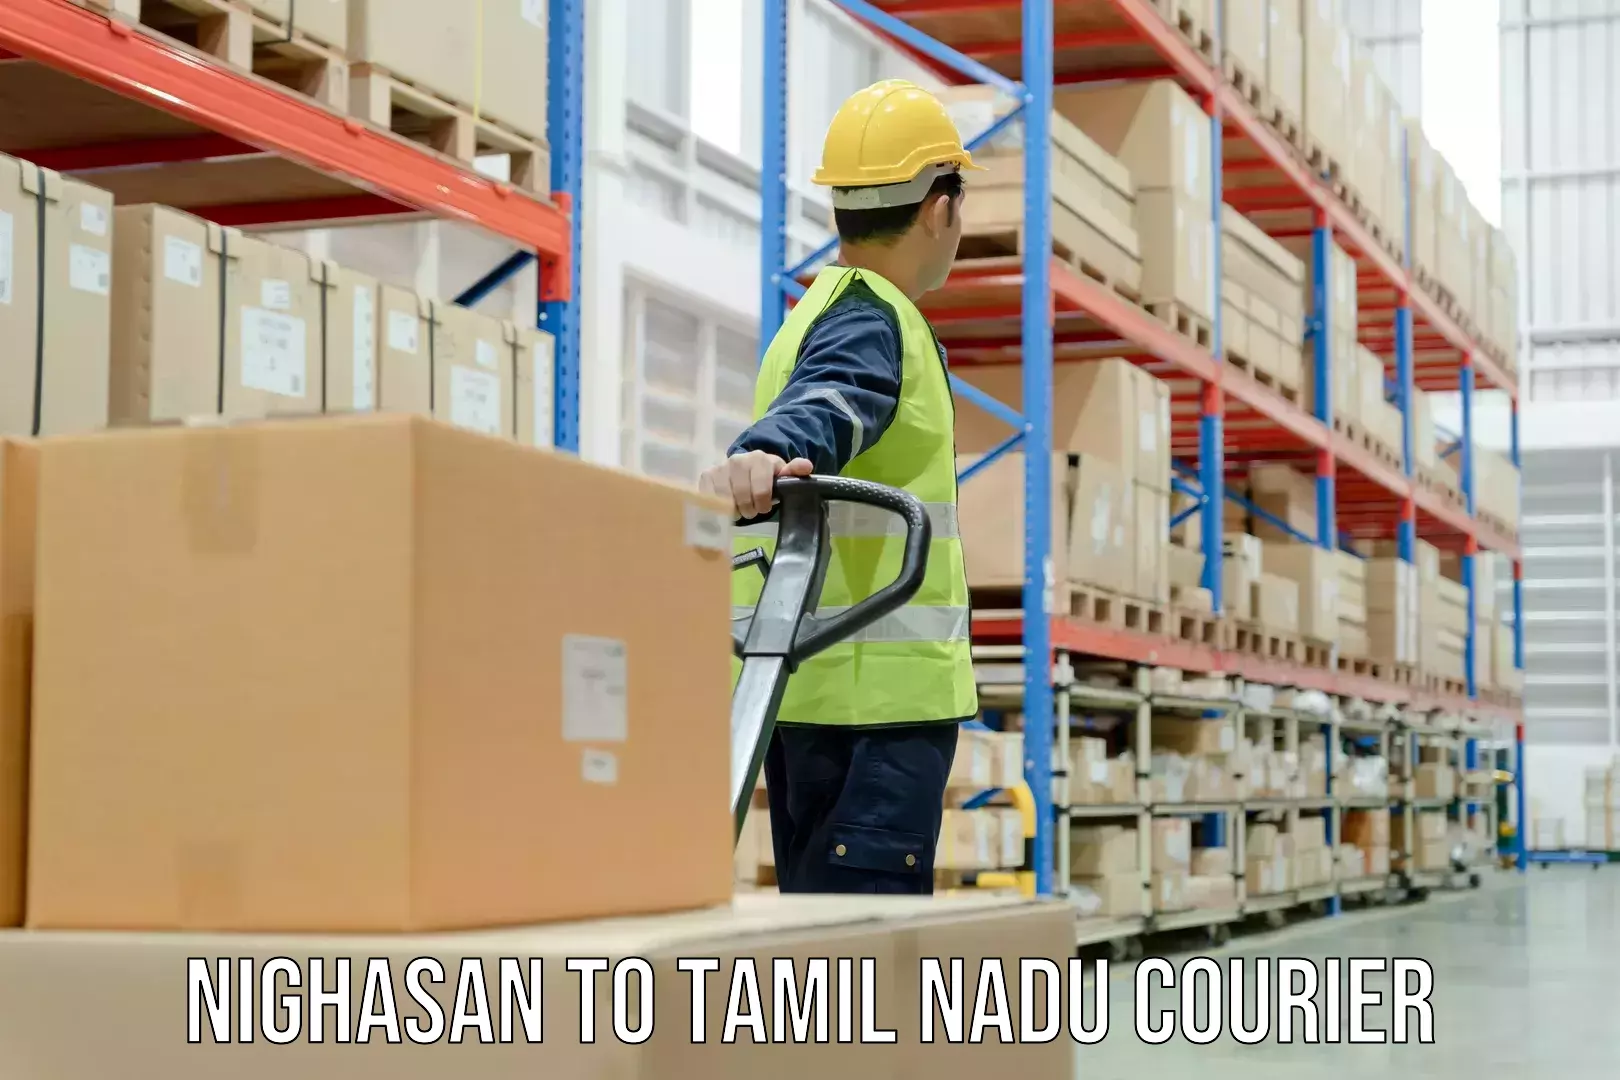 Multi-service courier options Nighasan to Thiruvarur